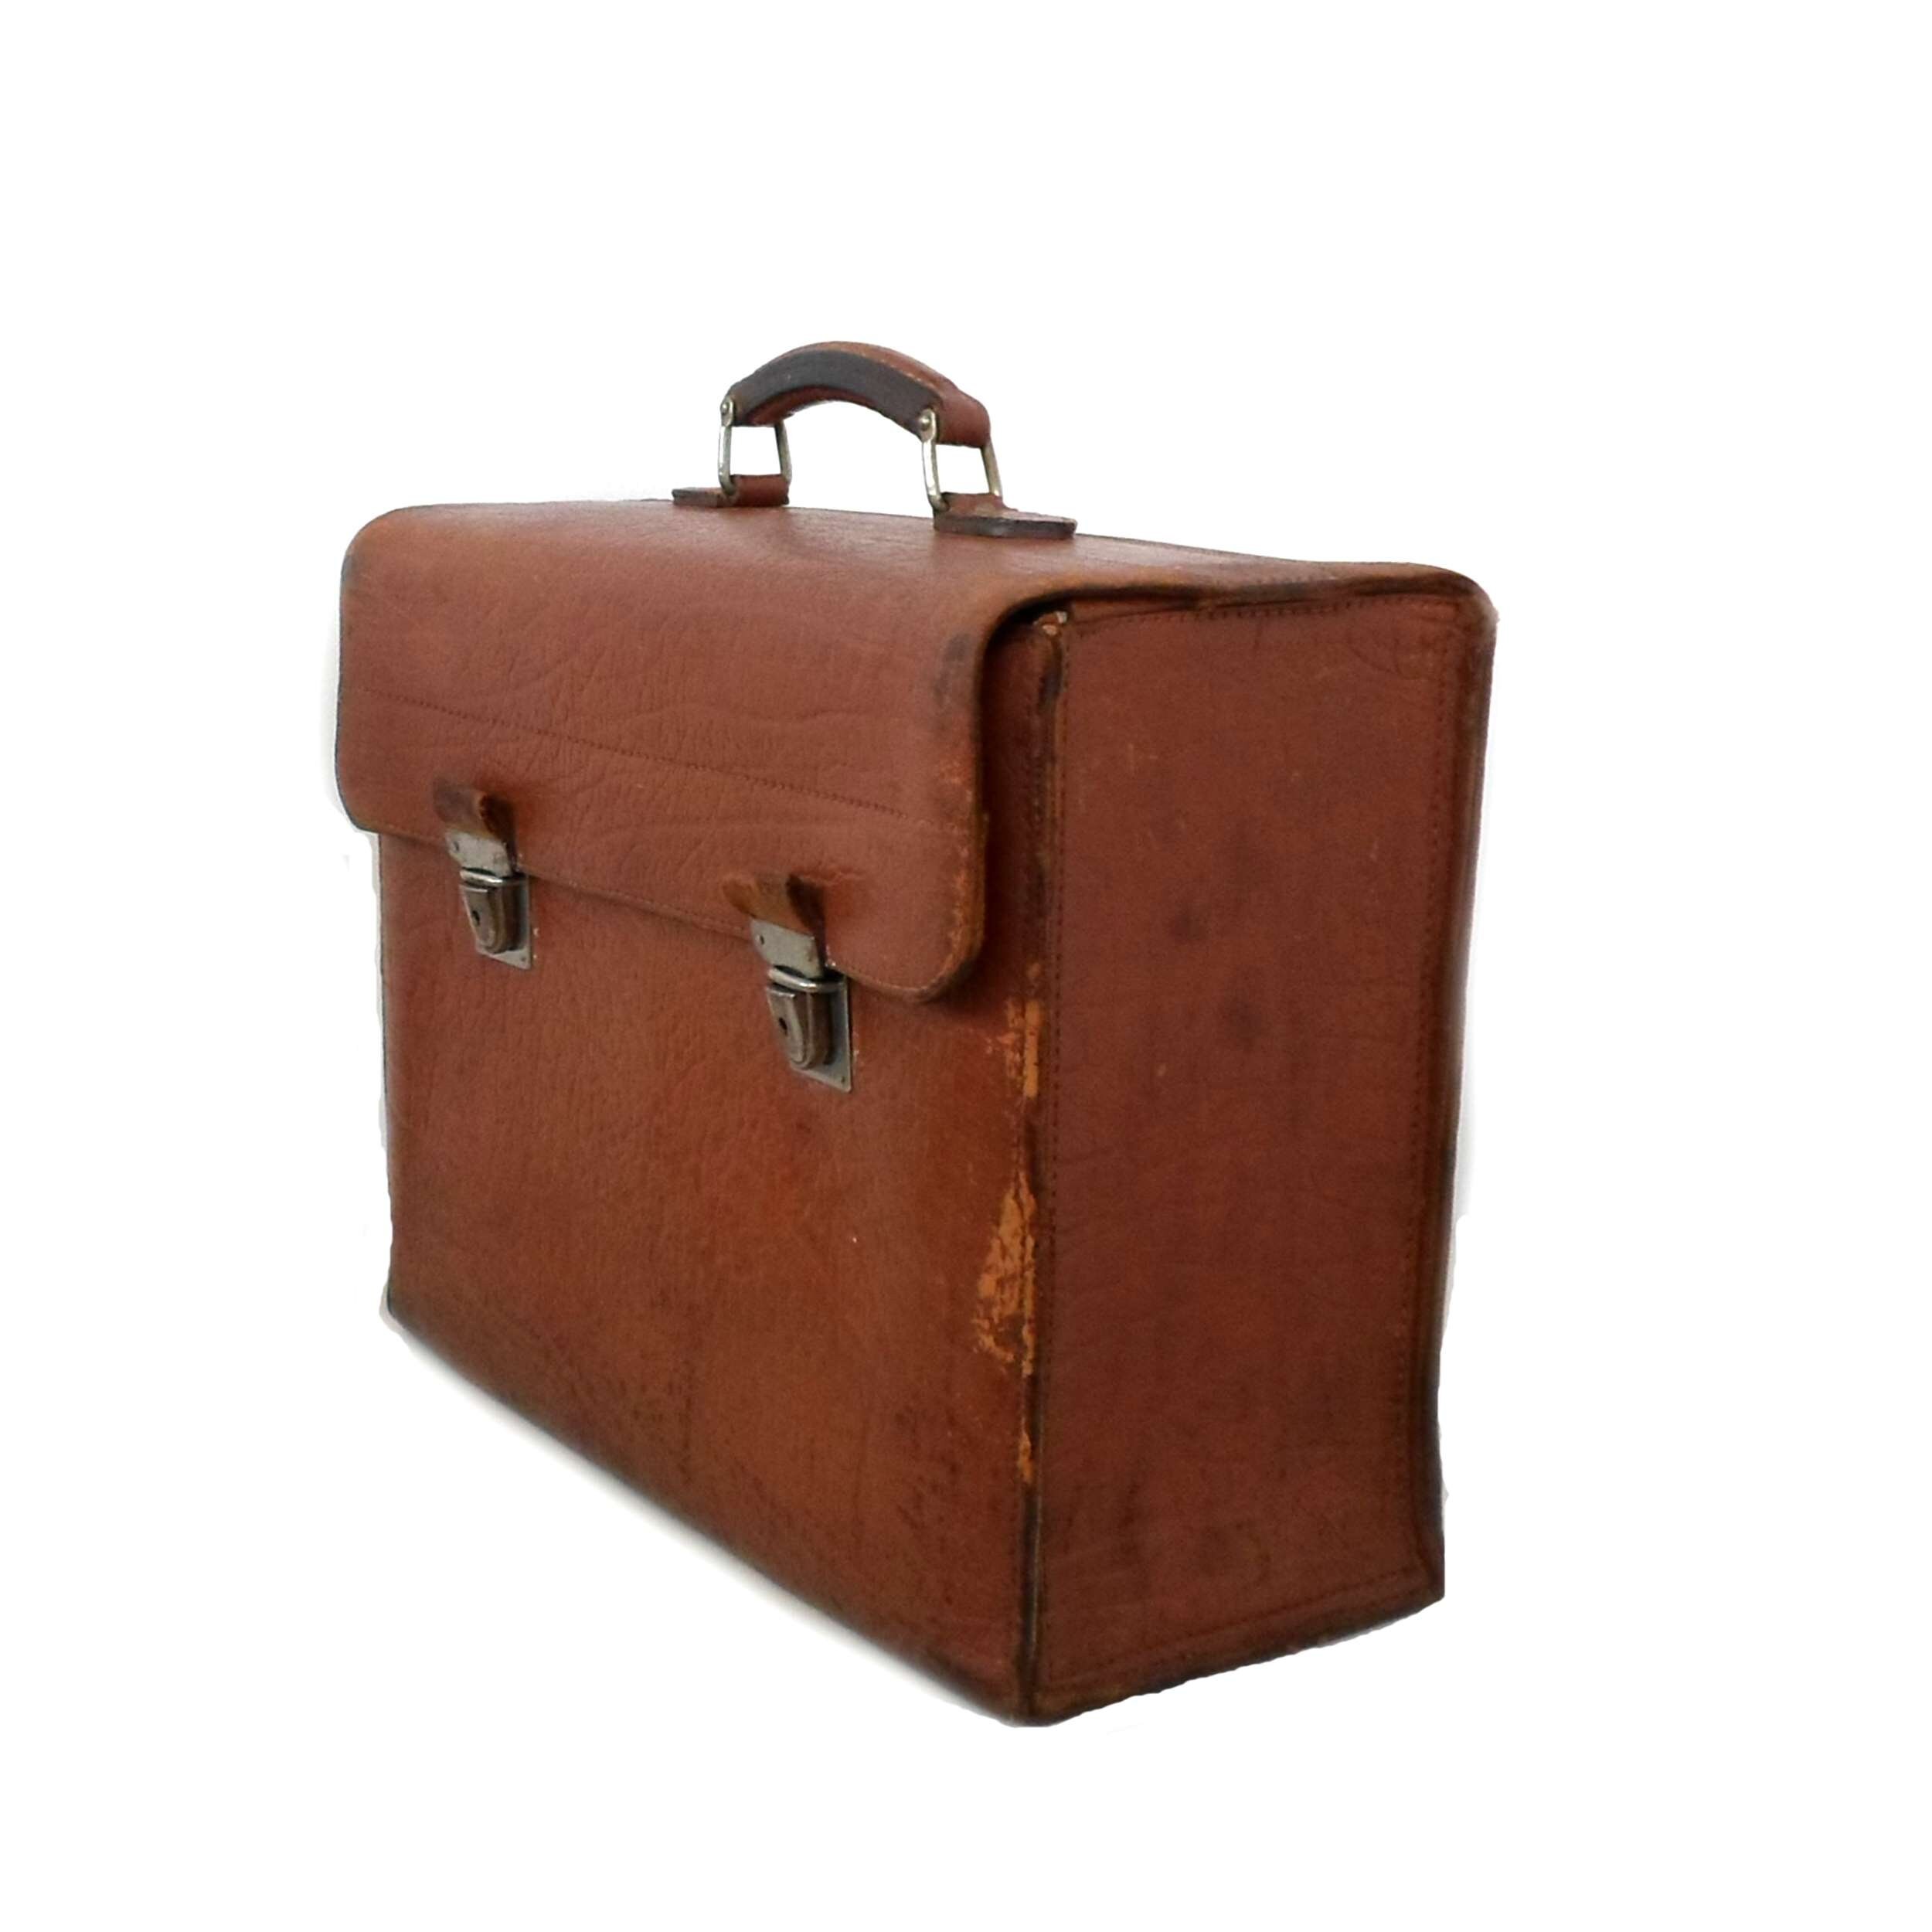 Antique leather pilot case leather case teacher's school | Etsy